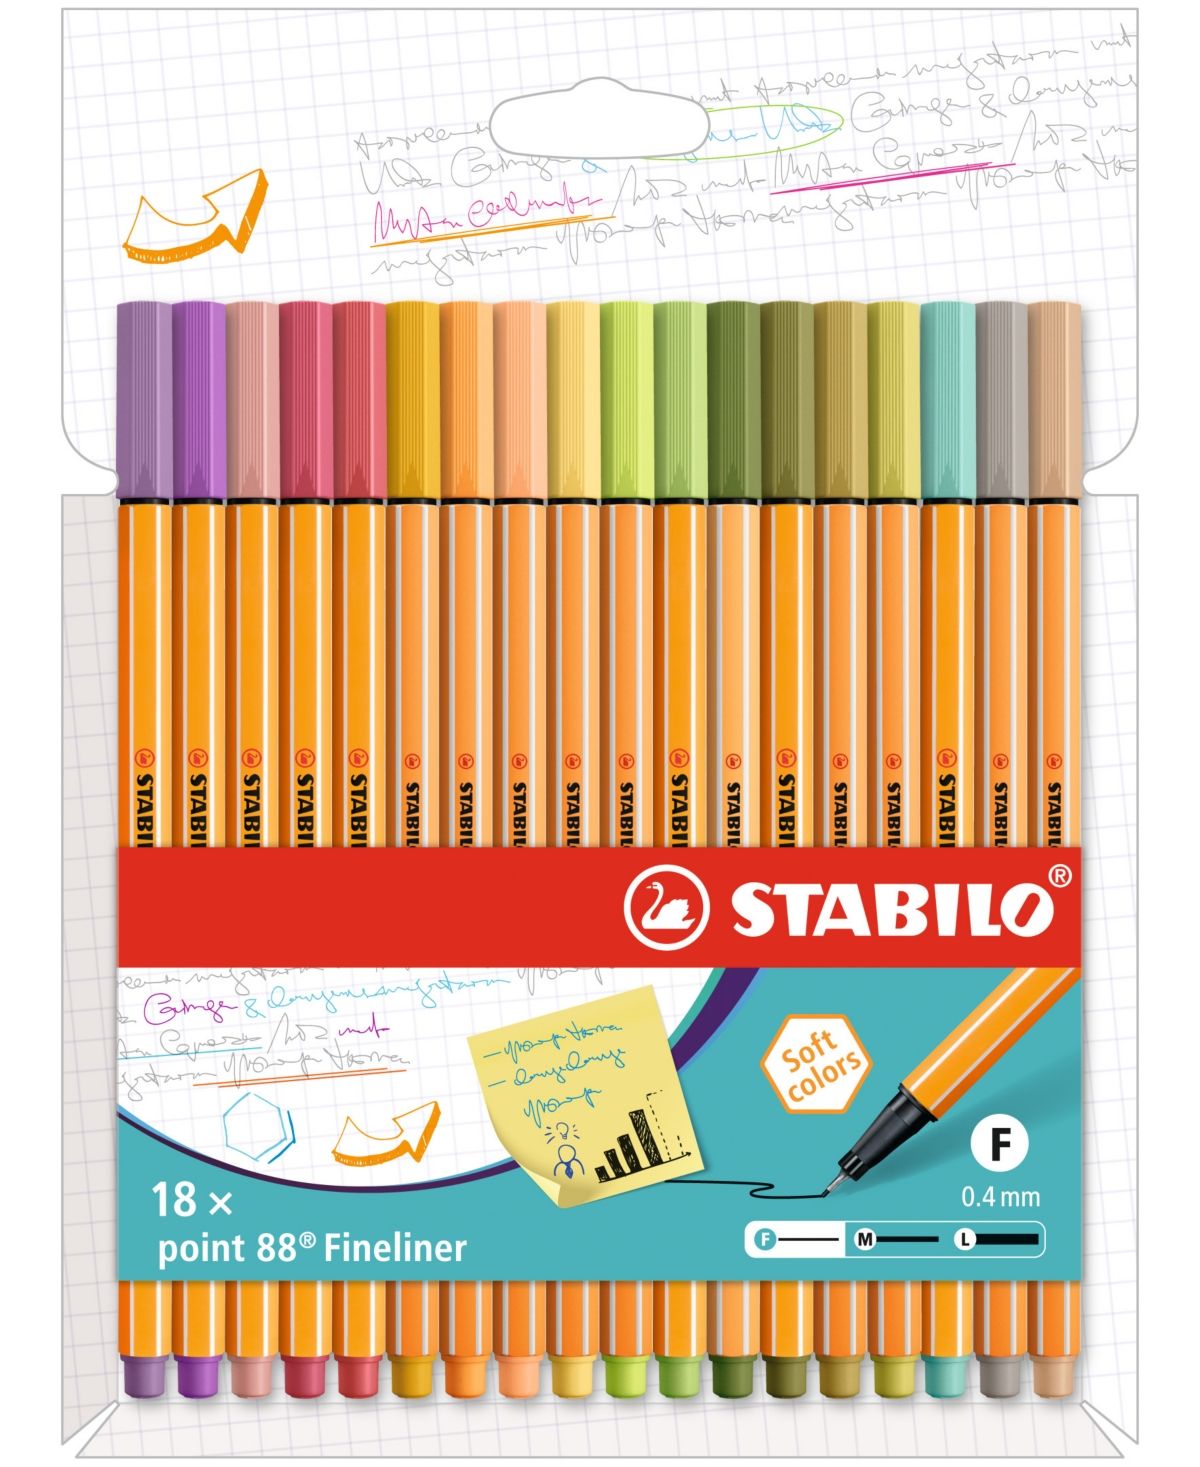 Stabilo Pen 88 Wallet 18 Piece Set | Macys (US)